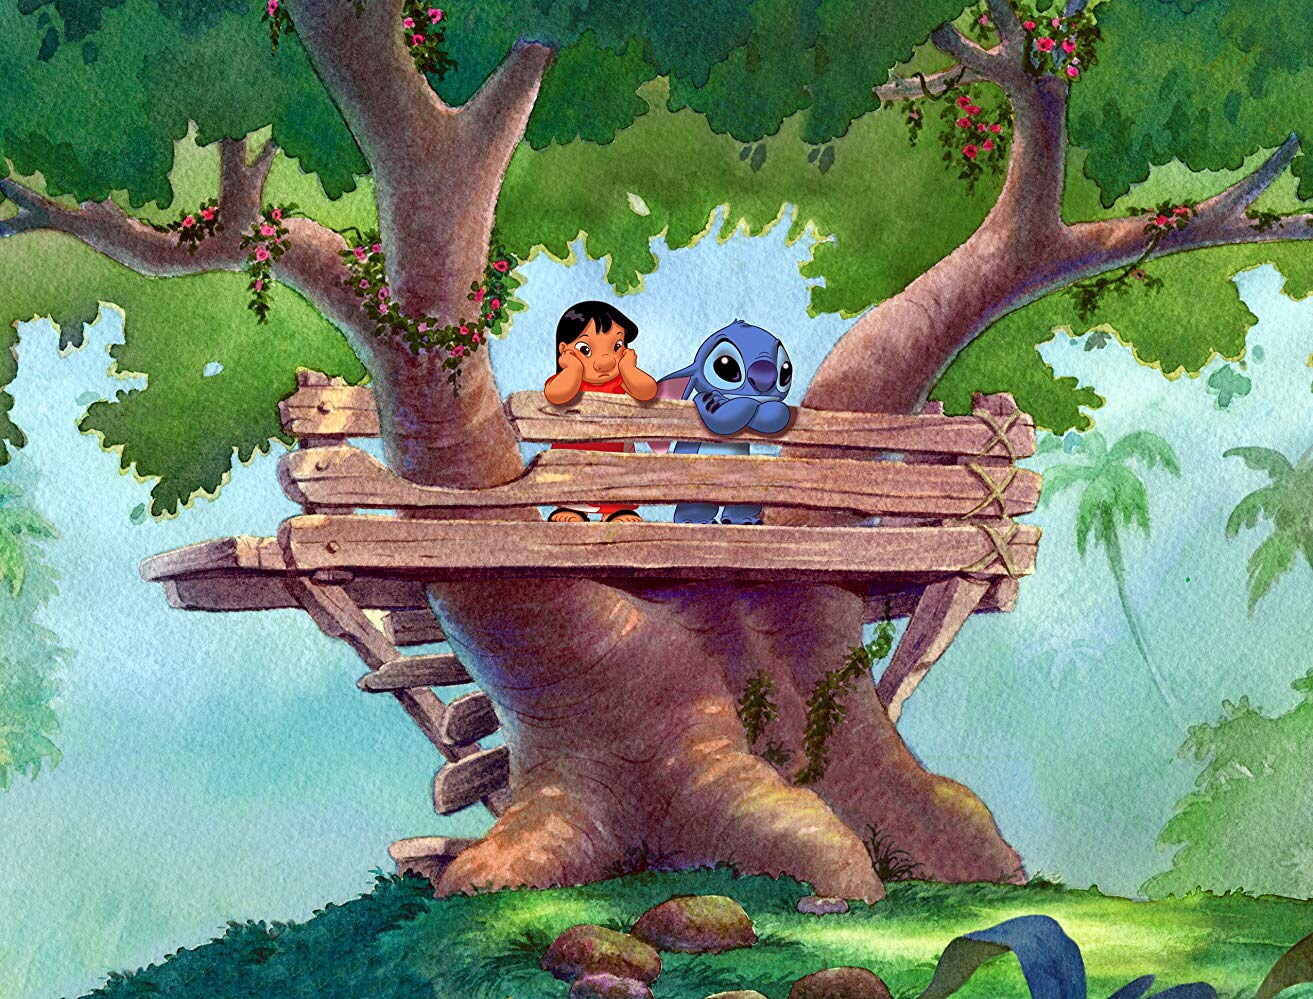 Disney alista la versión live action de 'Lilo & Stitch